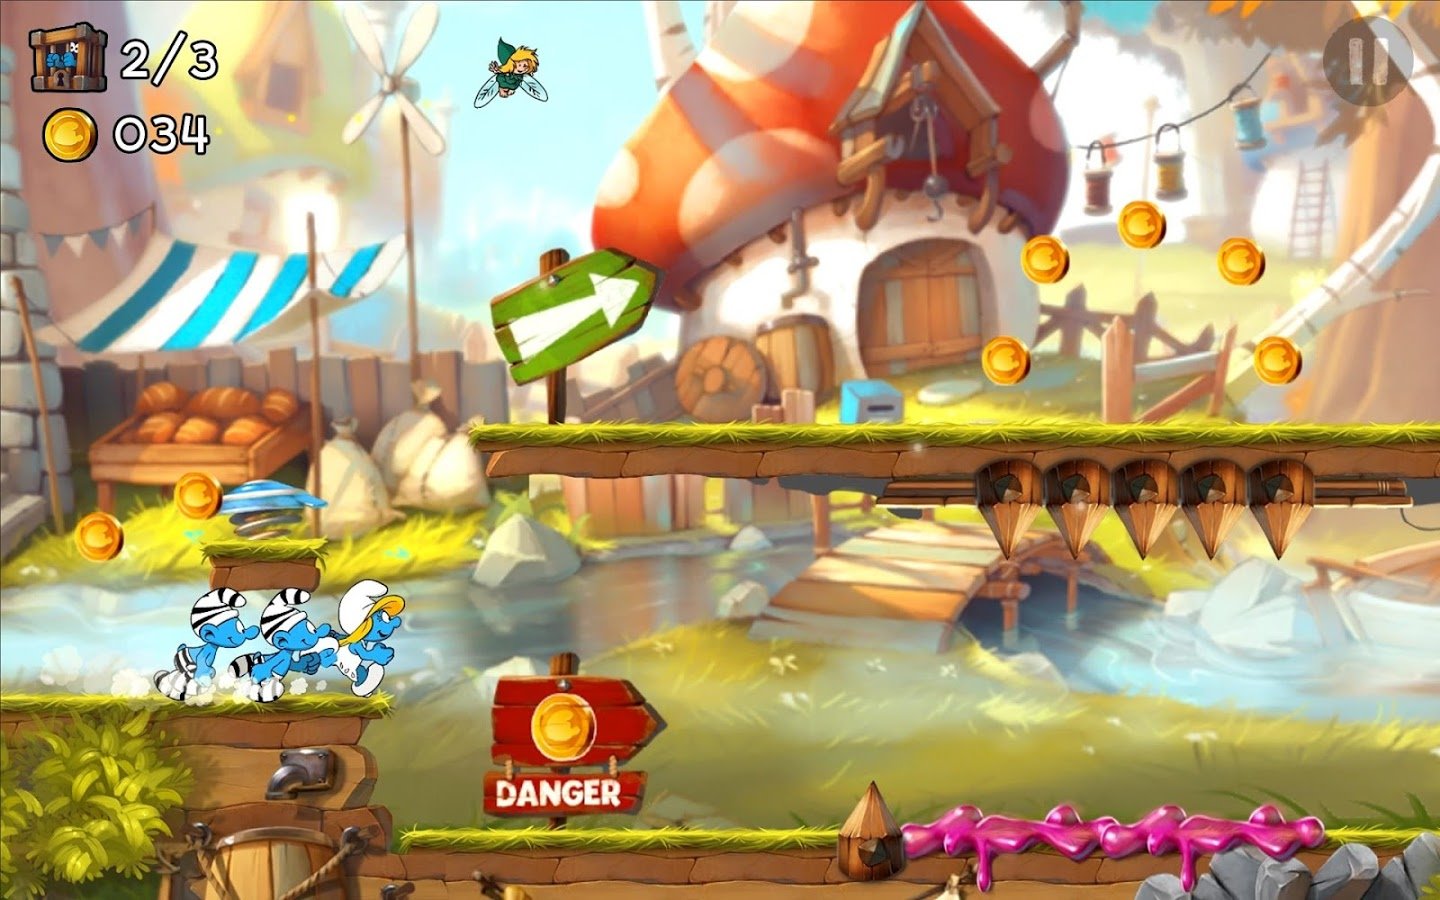 Rayman, The Cave: veja jogos no 'estilo Mario' para smarts Android